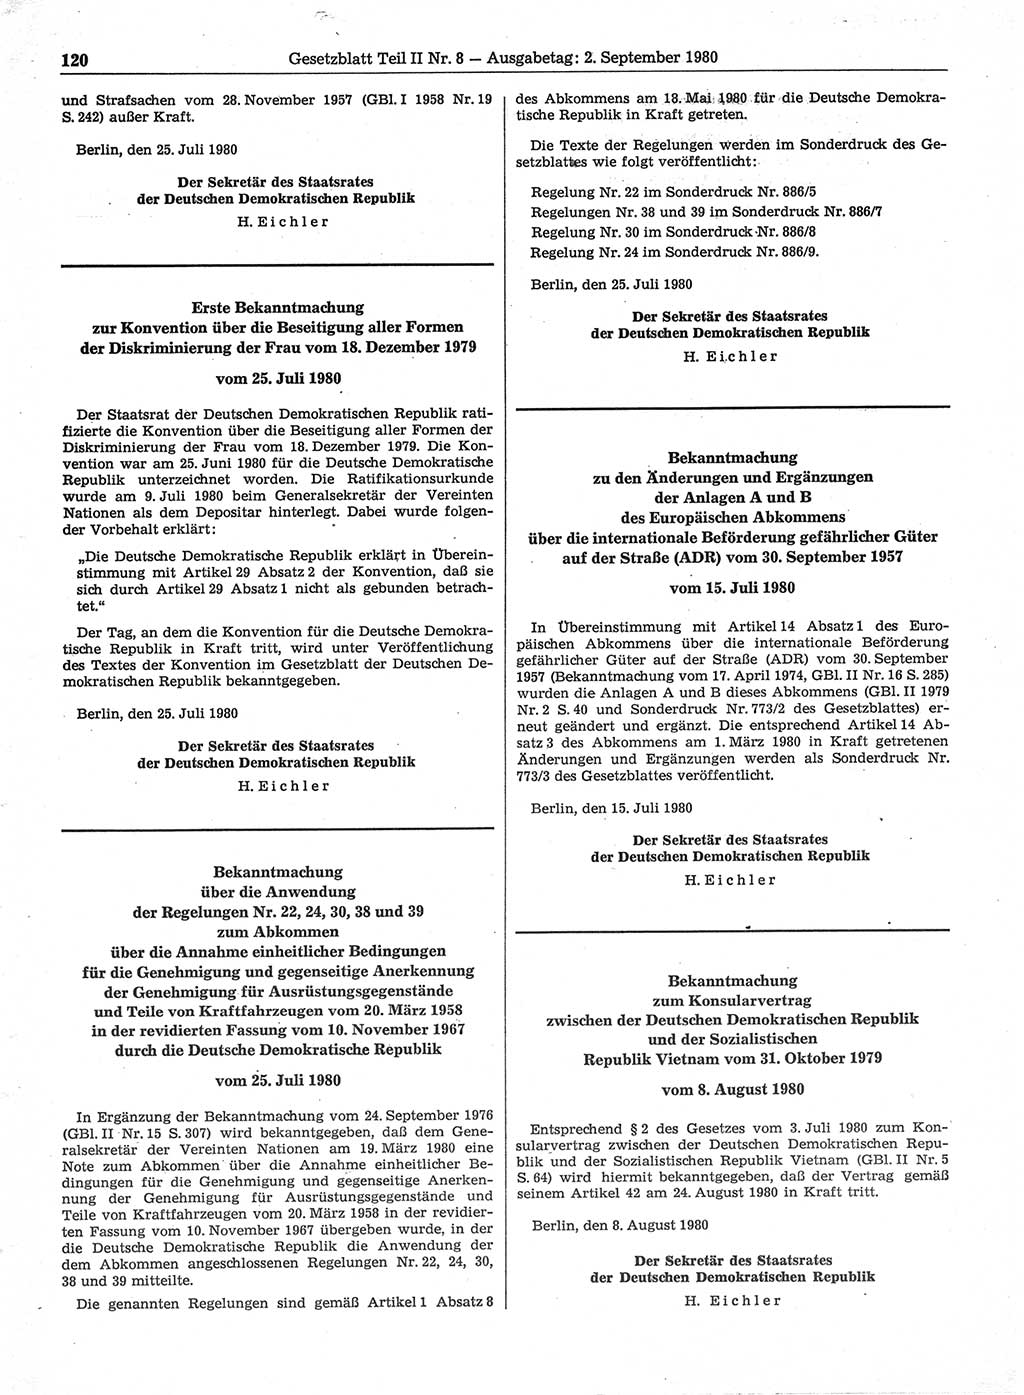 Gesetzblatt (GBl.) der Deutschen Demokratischen Republik (DDR) Teil ⅠⅠ 1980, Seite 120 (GBl. DDR ⅠⅠ 1980, S. 120)